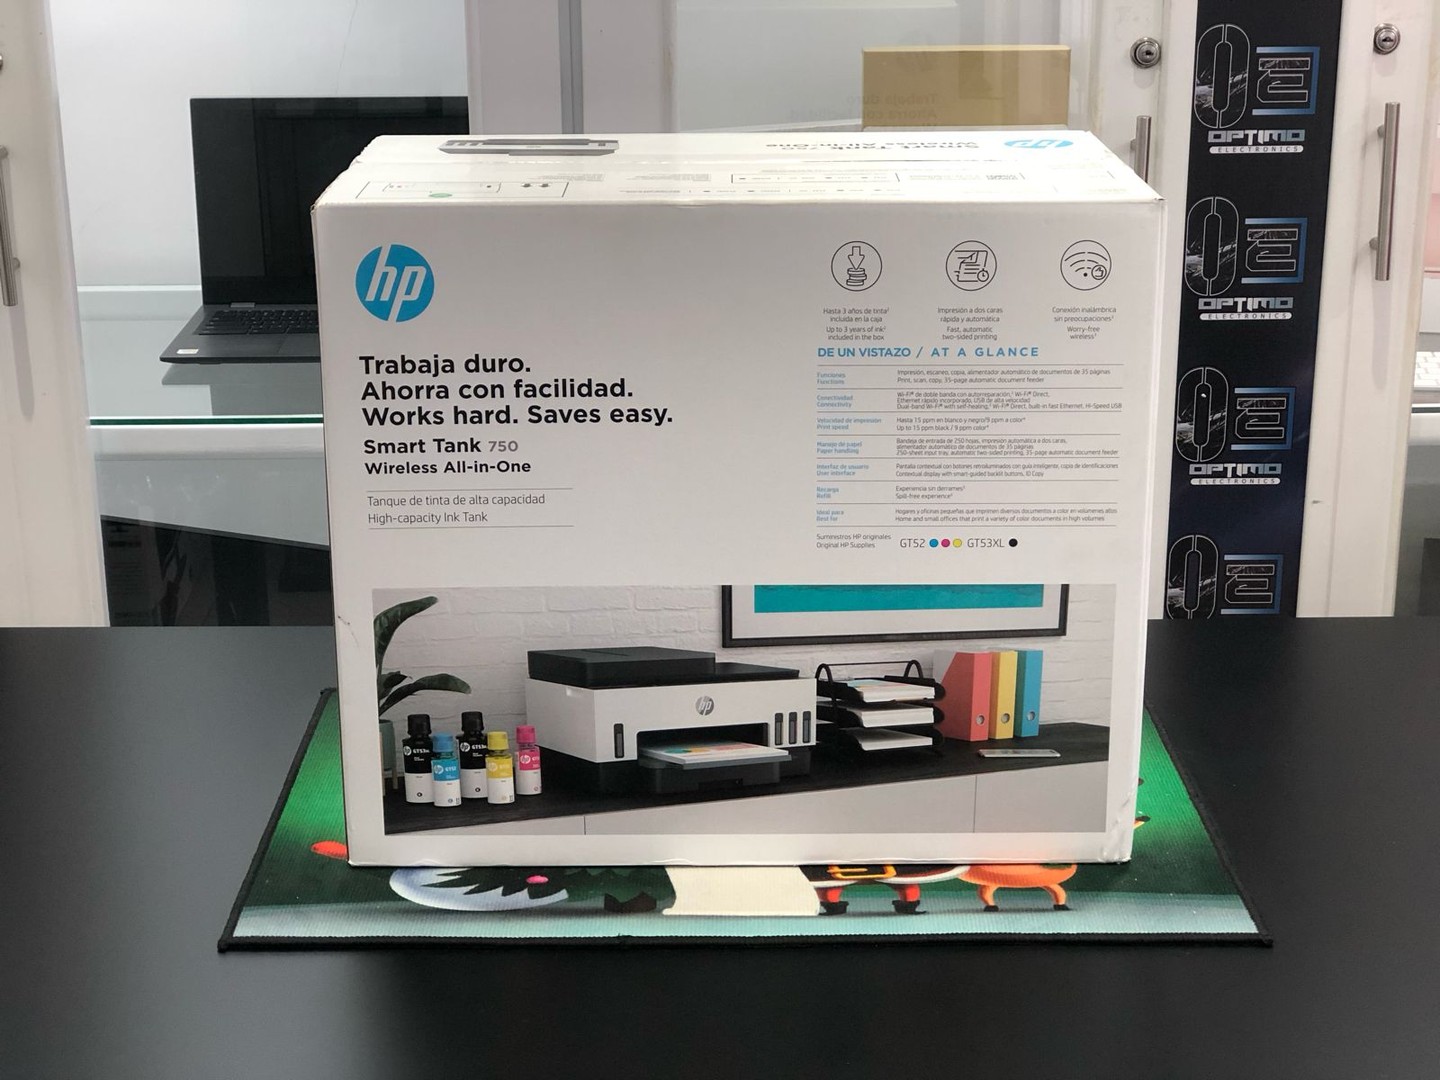 impresoras y scanners - Impresora HP 750 ADF Para Copia de Hoja Legal Nueva y Selalda Wifi, Multifuncion